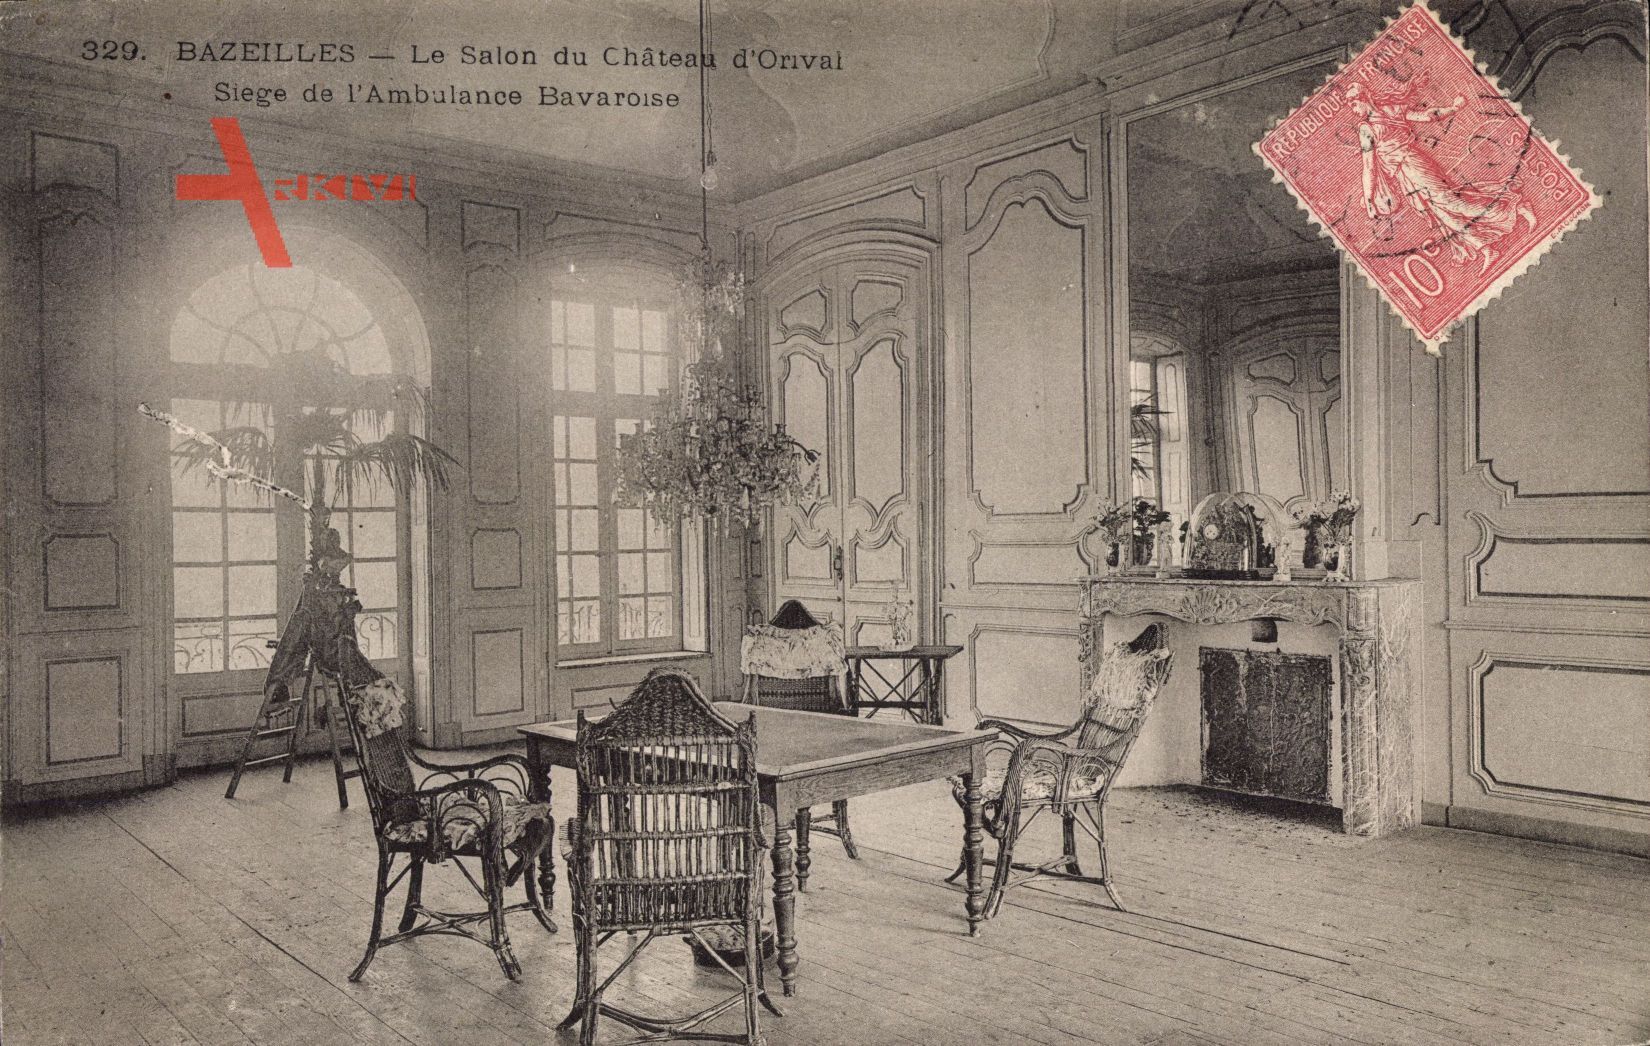 Bazeilles Ardennes, Salon du Château d'Onval, Ambulance Bavaroise